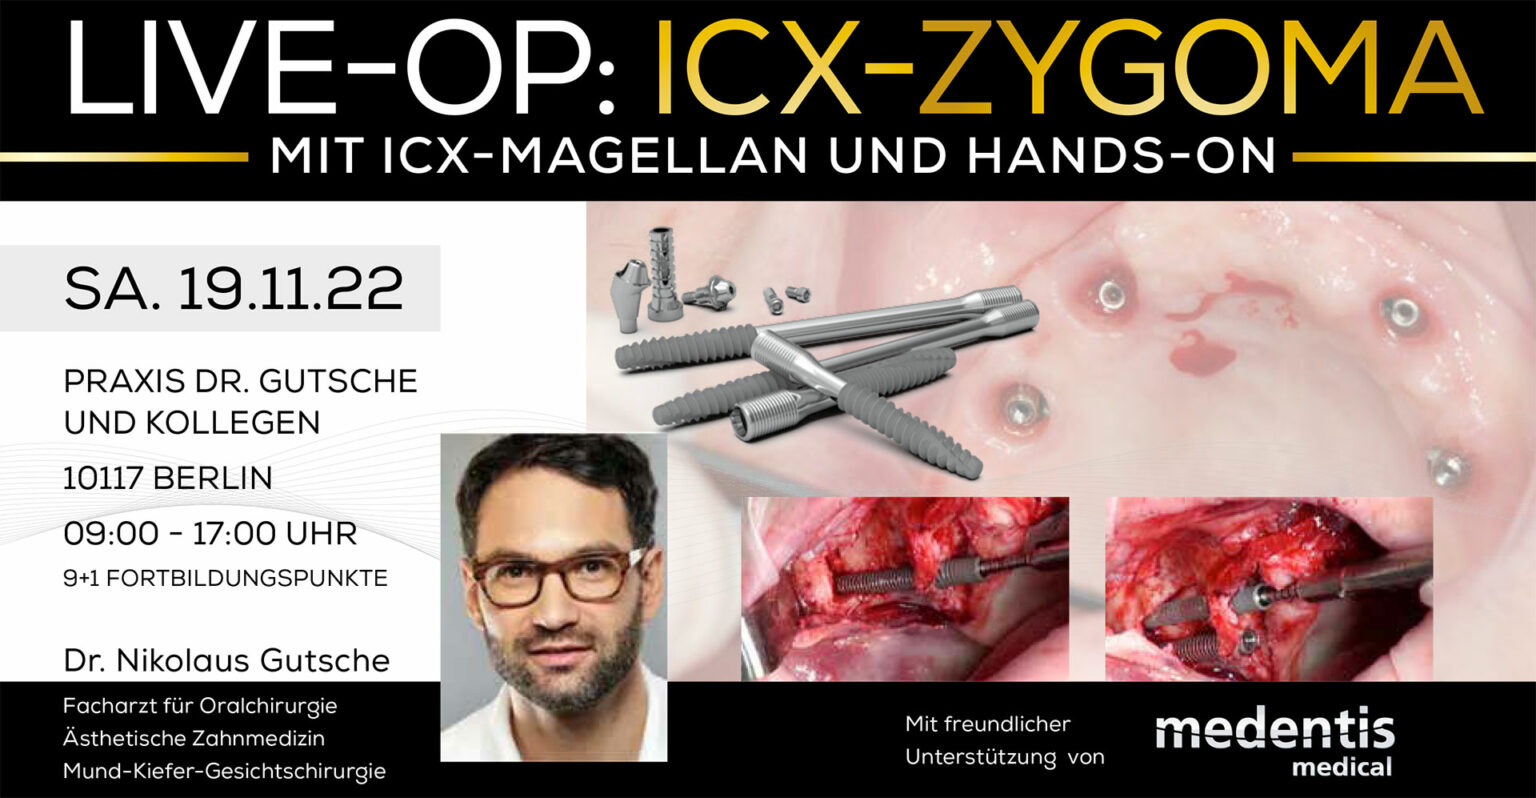 Live-OP: ICX-Zygoma – Mit ICX-Magellan und Hands-on